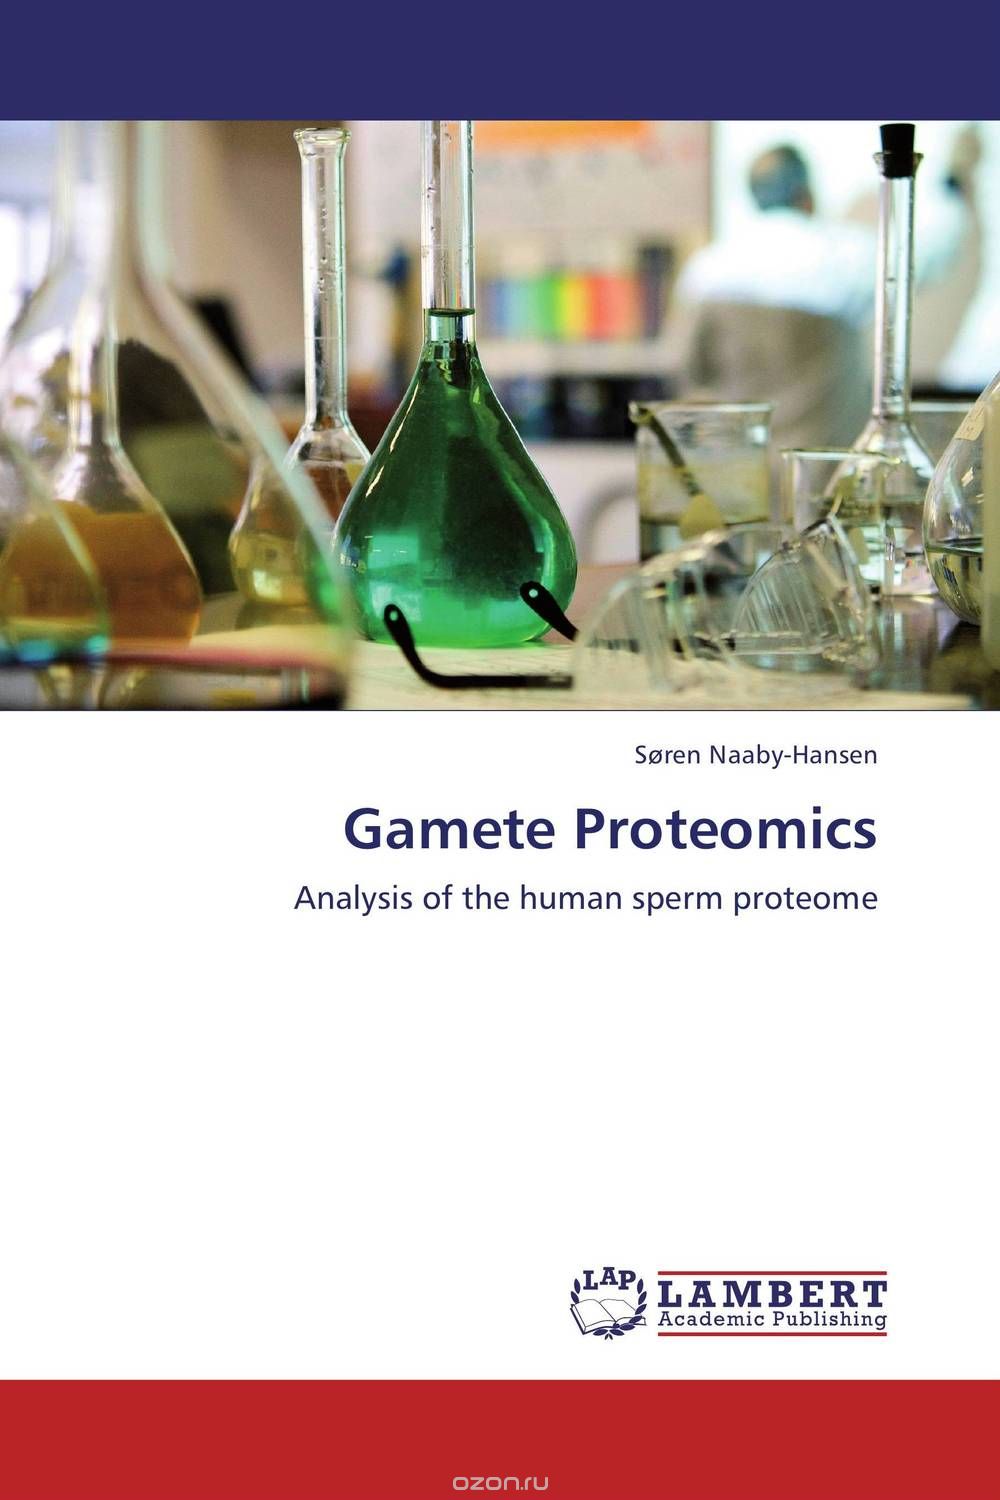 Скачать книгу "Gamete Proteomics"